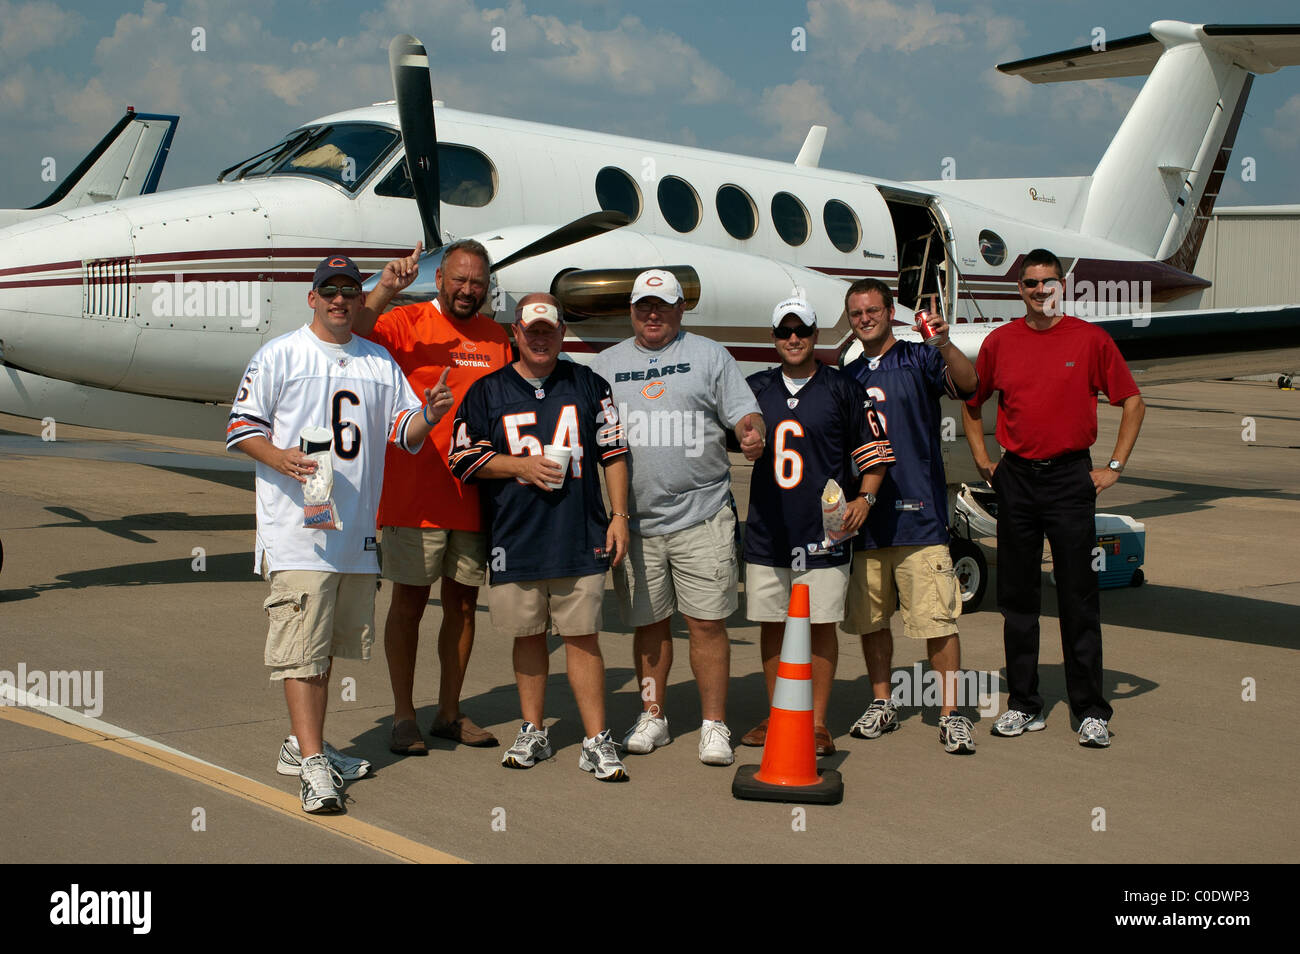 NFL's Chicago Bear's fans volar en avión privado a Arlington, Texas, EE.UU. para ver el partido de fútbol v Dallas Cowboys Foto de stock